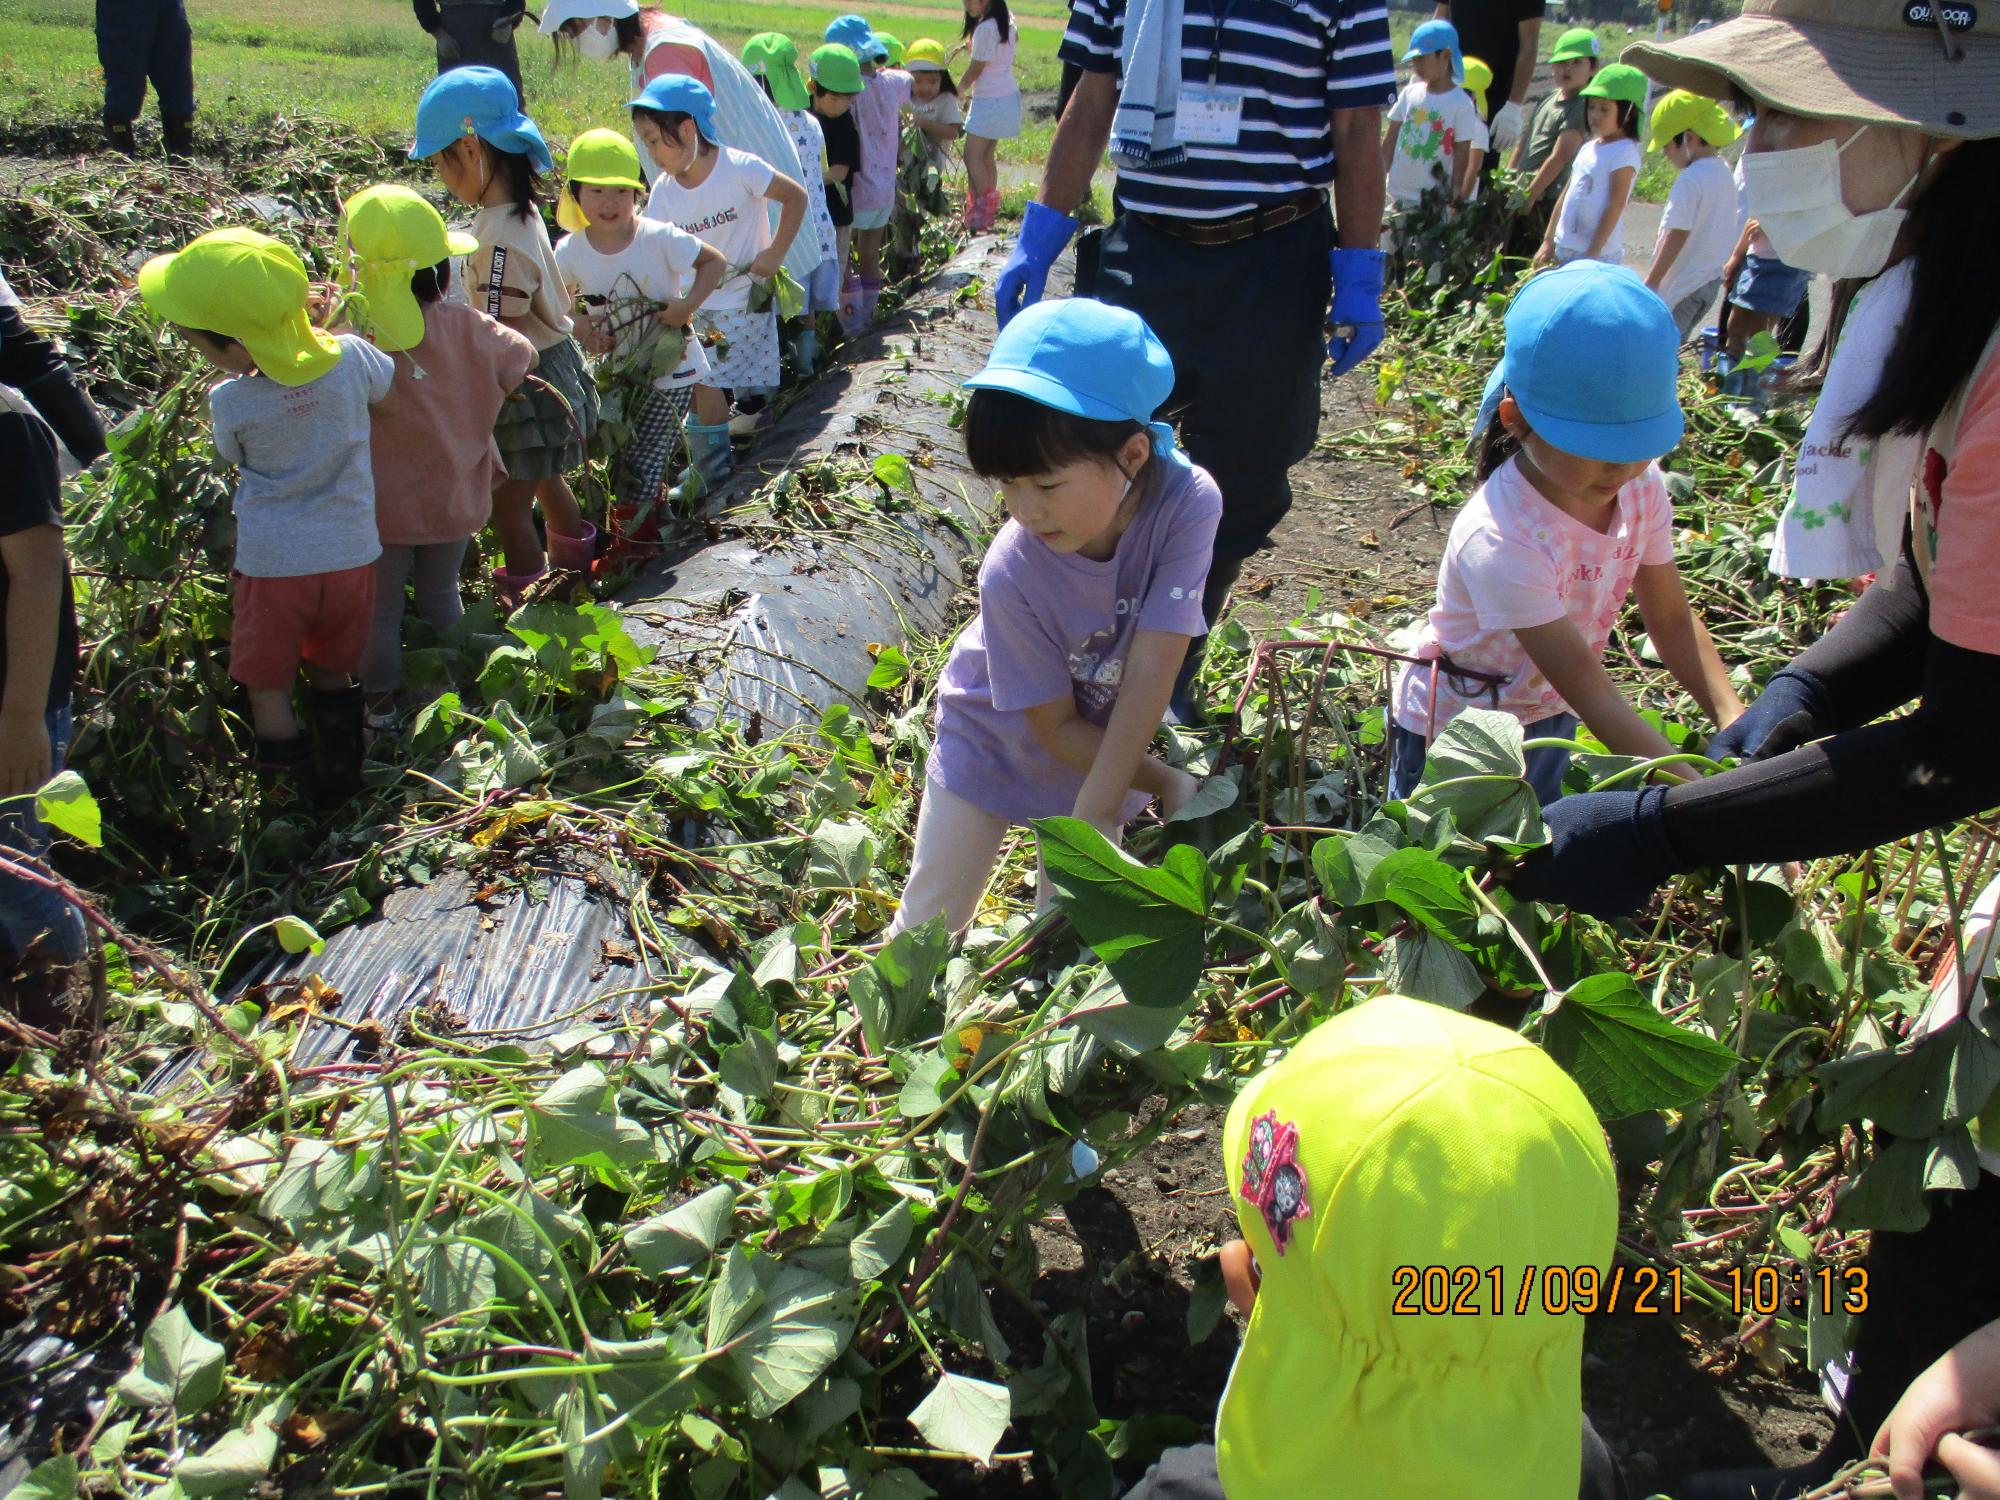 黄色や水色の帽子をかぶった園児達がさつまいものつるを引っ張り芋掘りをしている写真